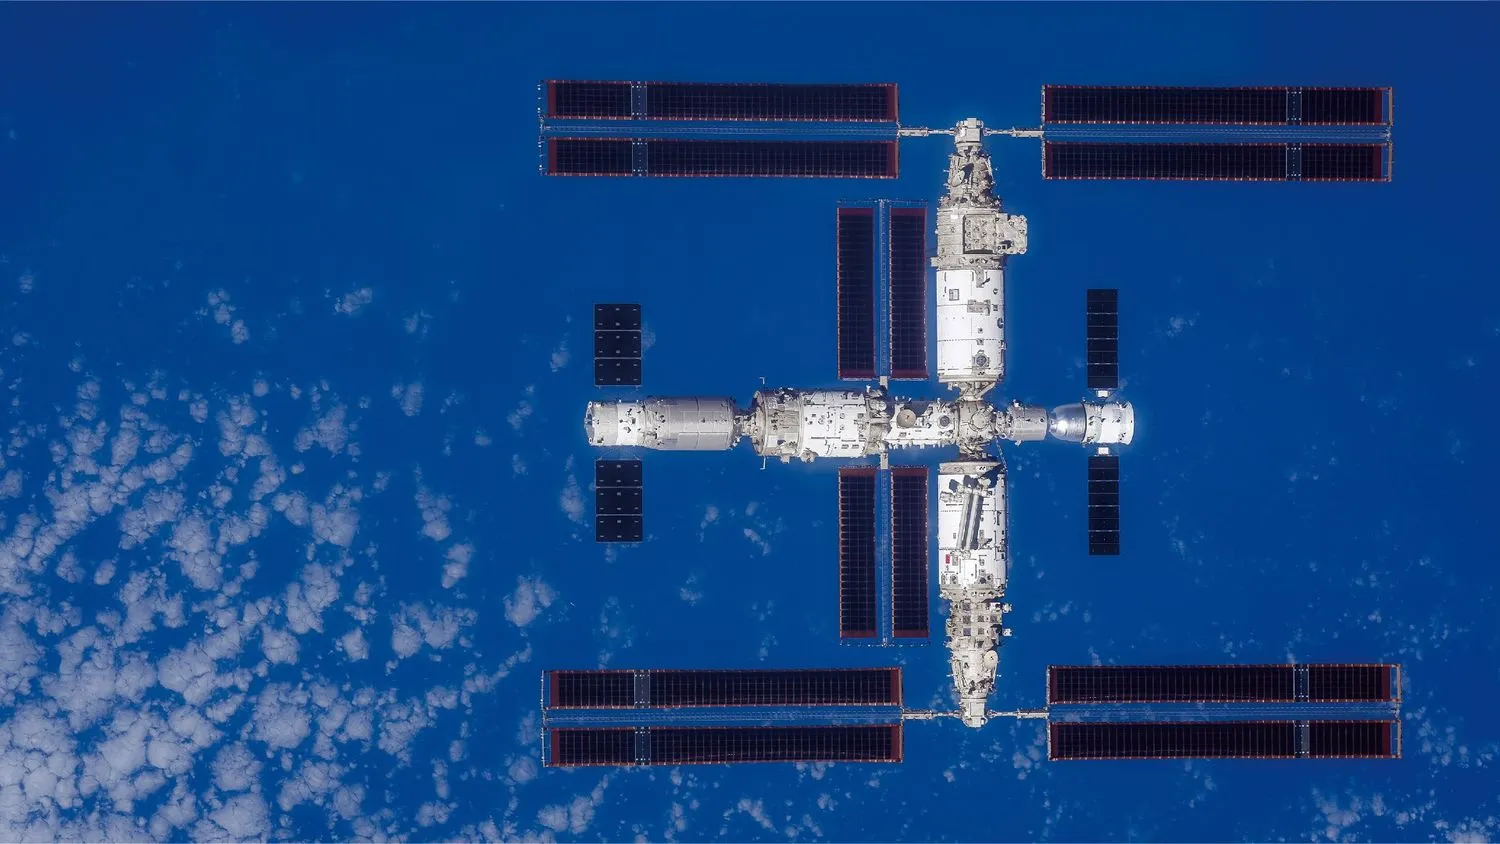 eine große T-förmige Raumstation von oben gesehen mit der Erde darunter